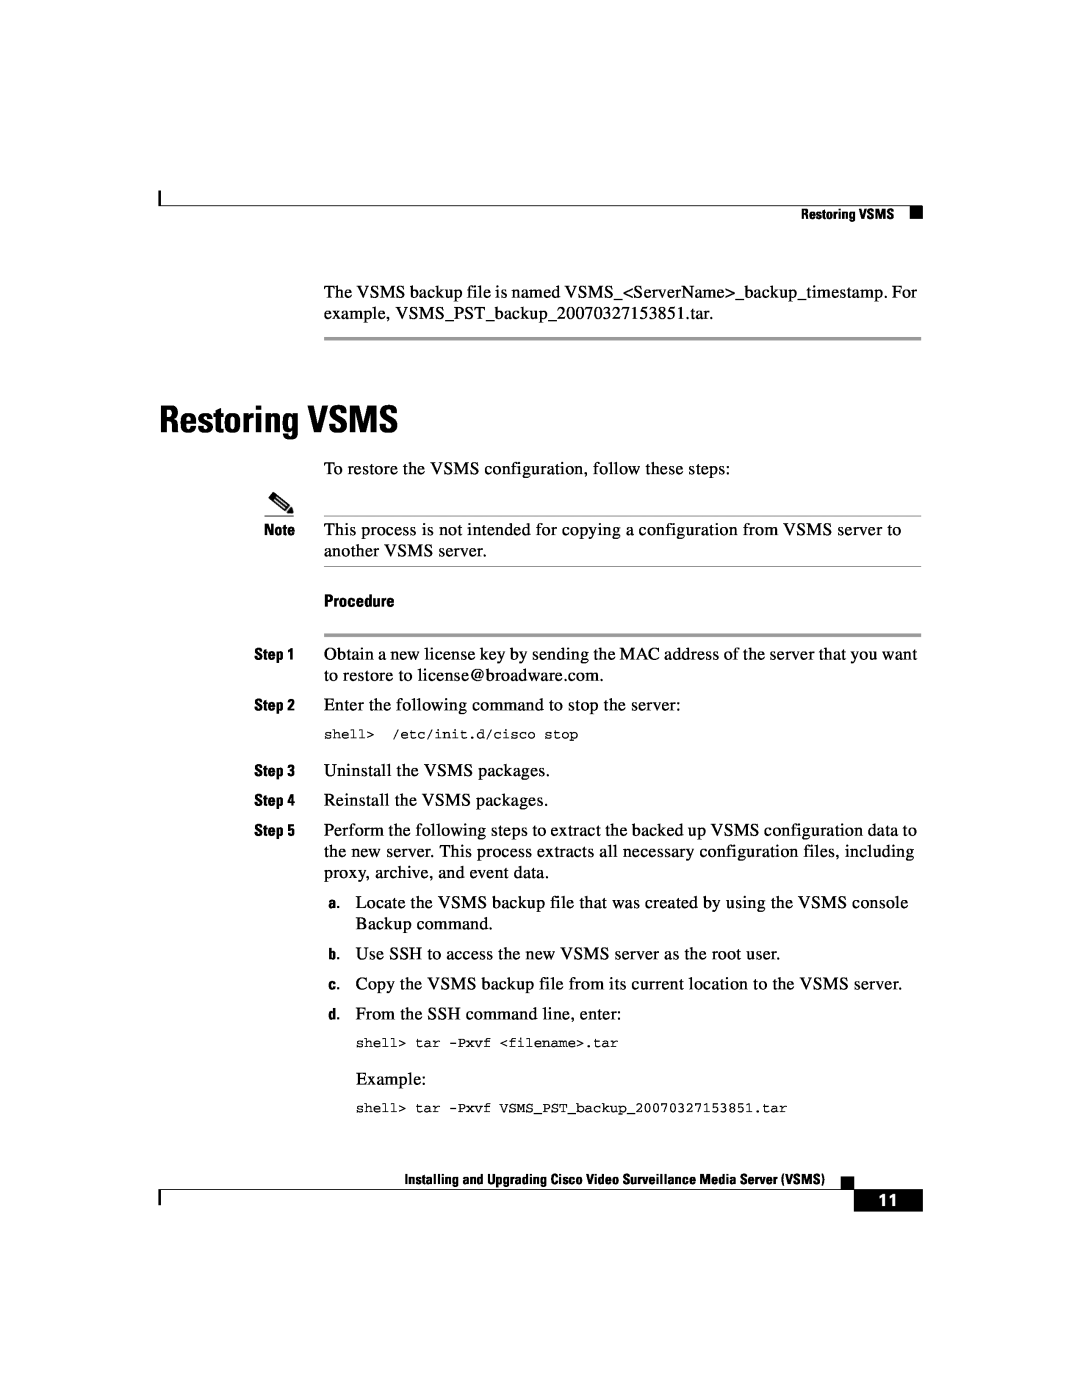 Cisco Systems Surveillance Media Server manual Restoring VSMS, Procedure 